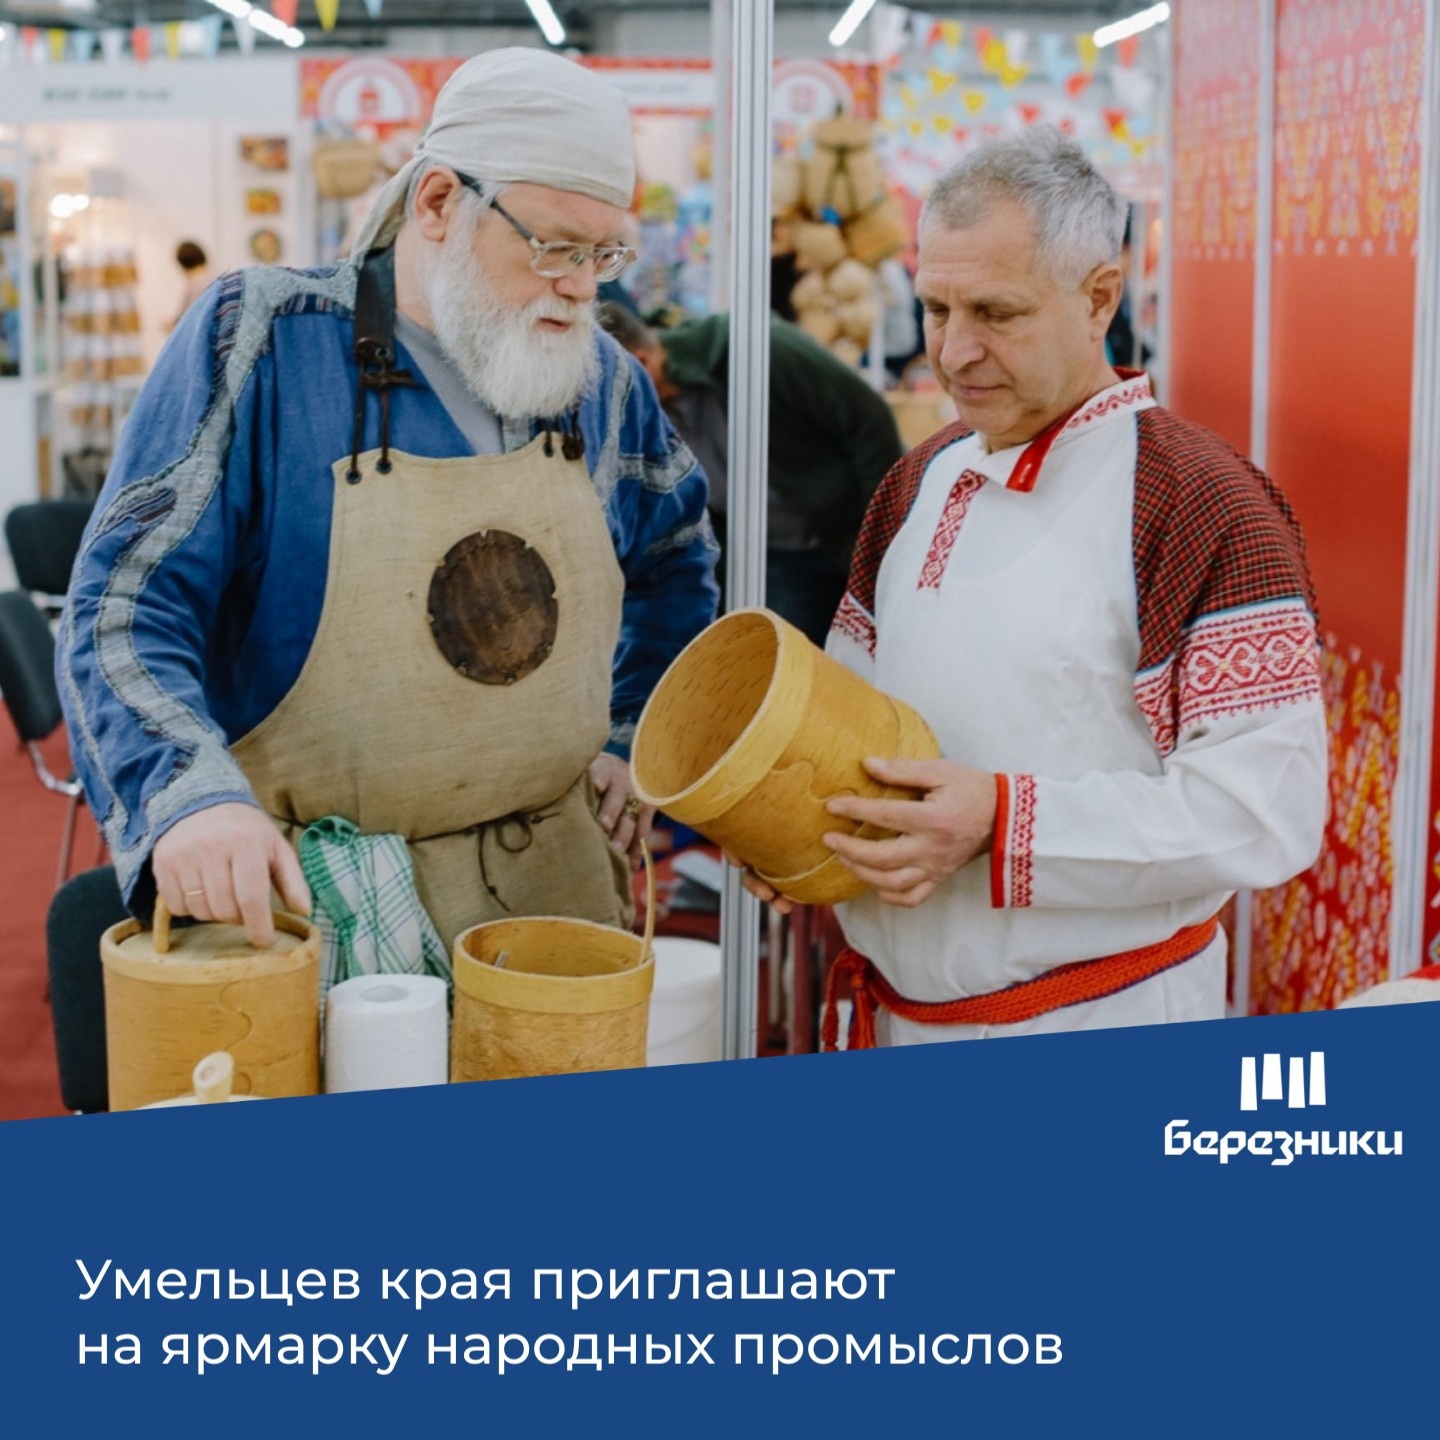 С 22 по 26 февраля 2023 года в Перми пройдет ярмарка народных промыслов и декоративно-прикладного искусства